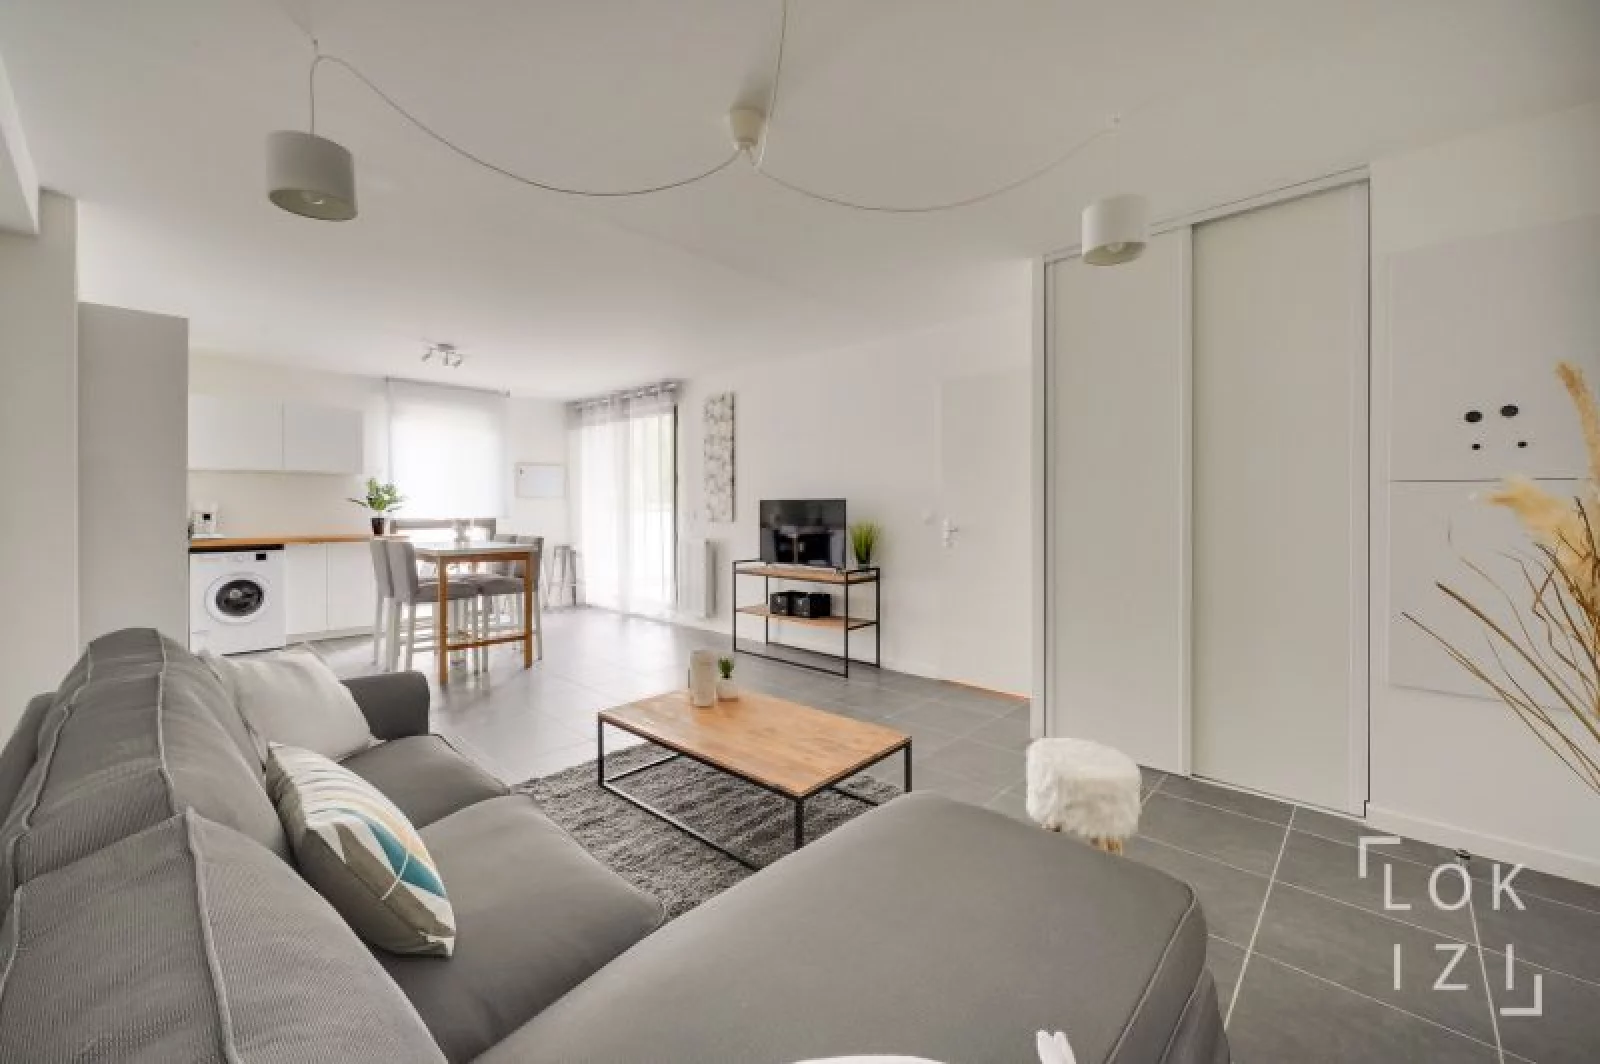 Location appartement meublé 4 pièces 84m² (Bordeaux sud )